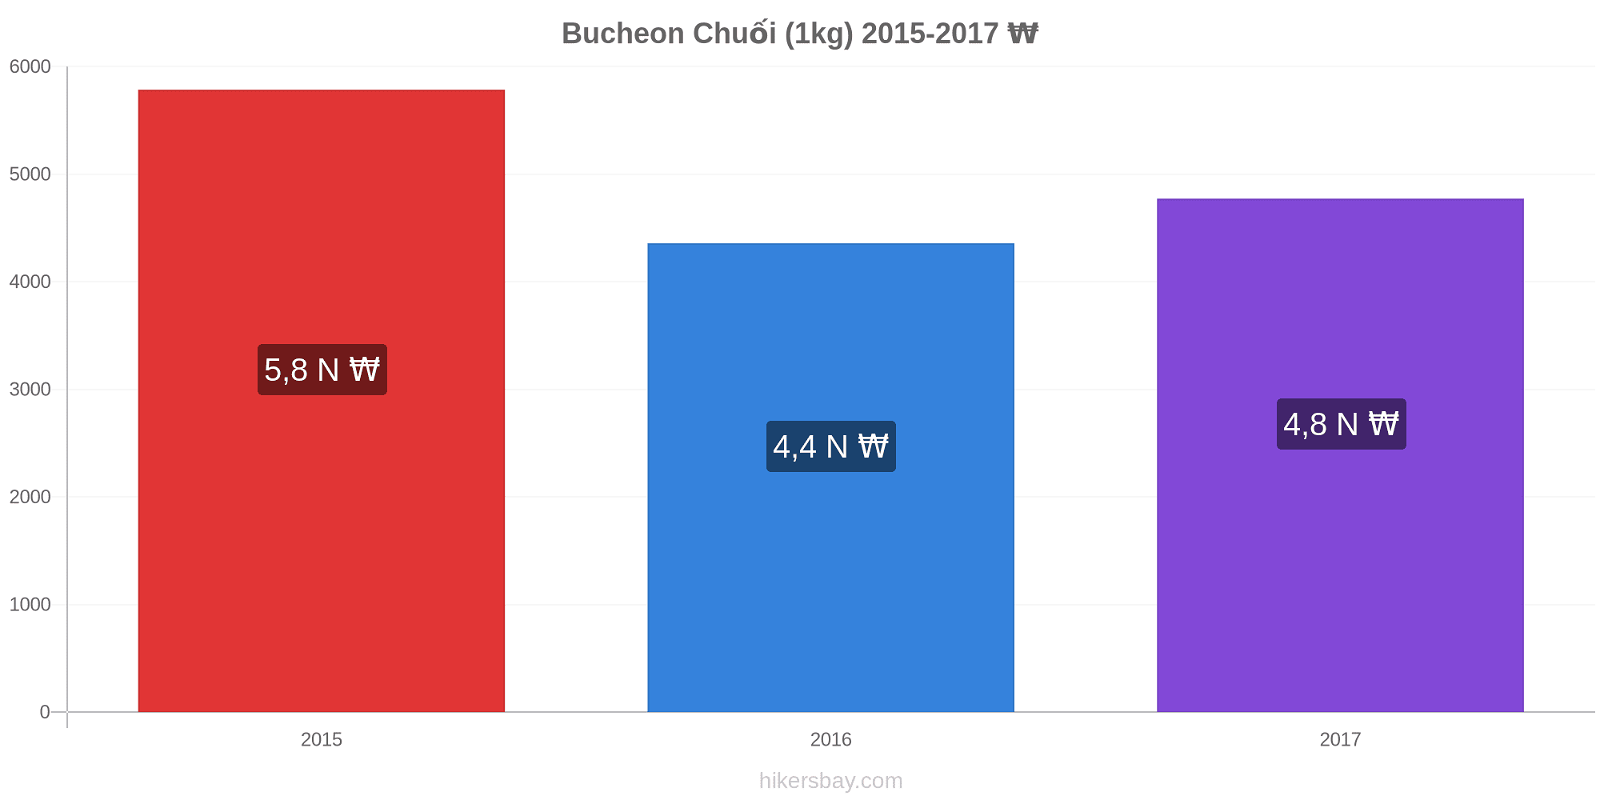 Bucheon thay đổi giá Chuối (1kg) hikersbay.com